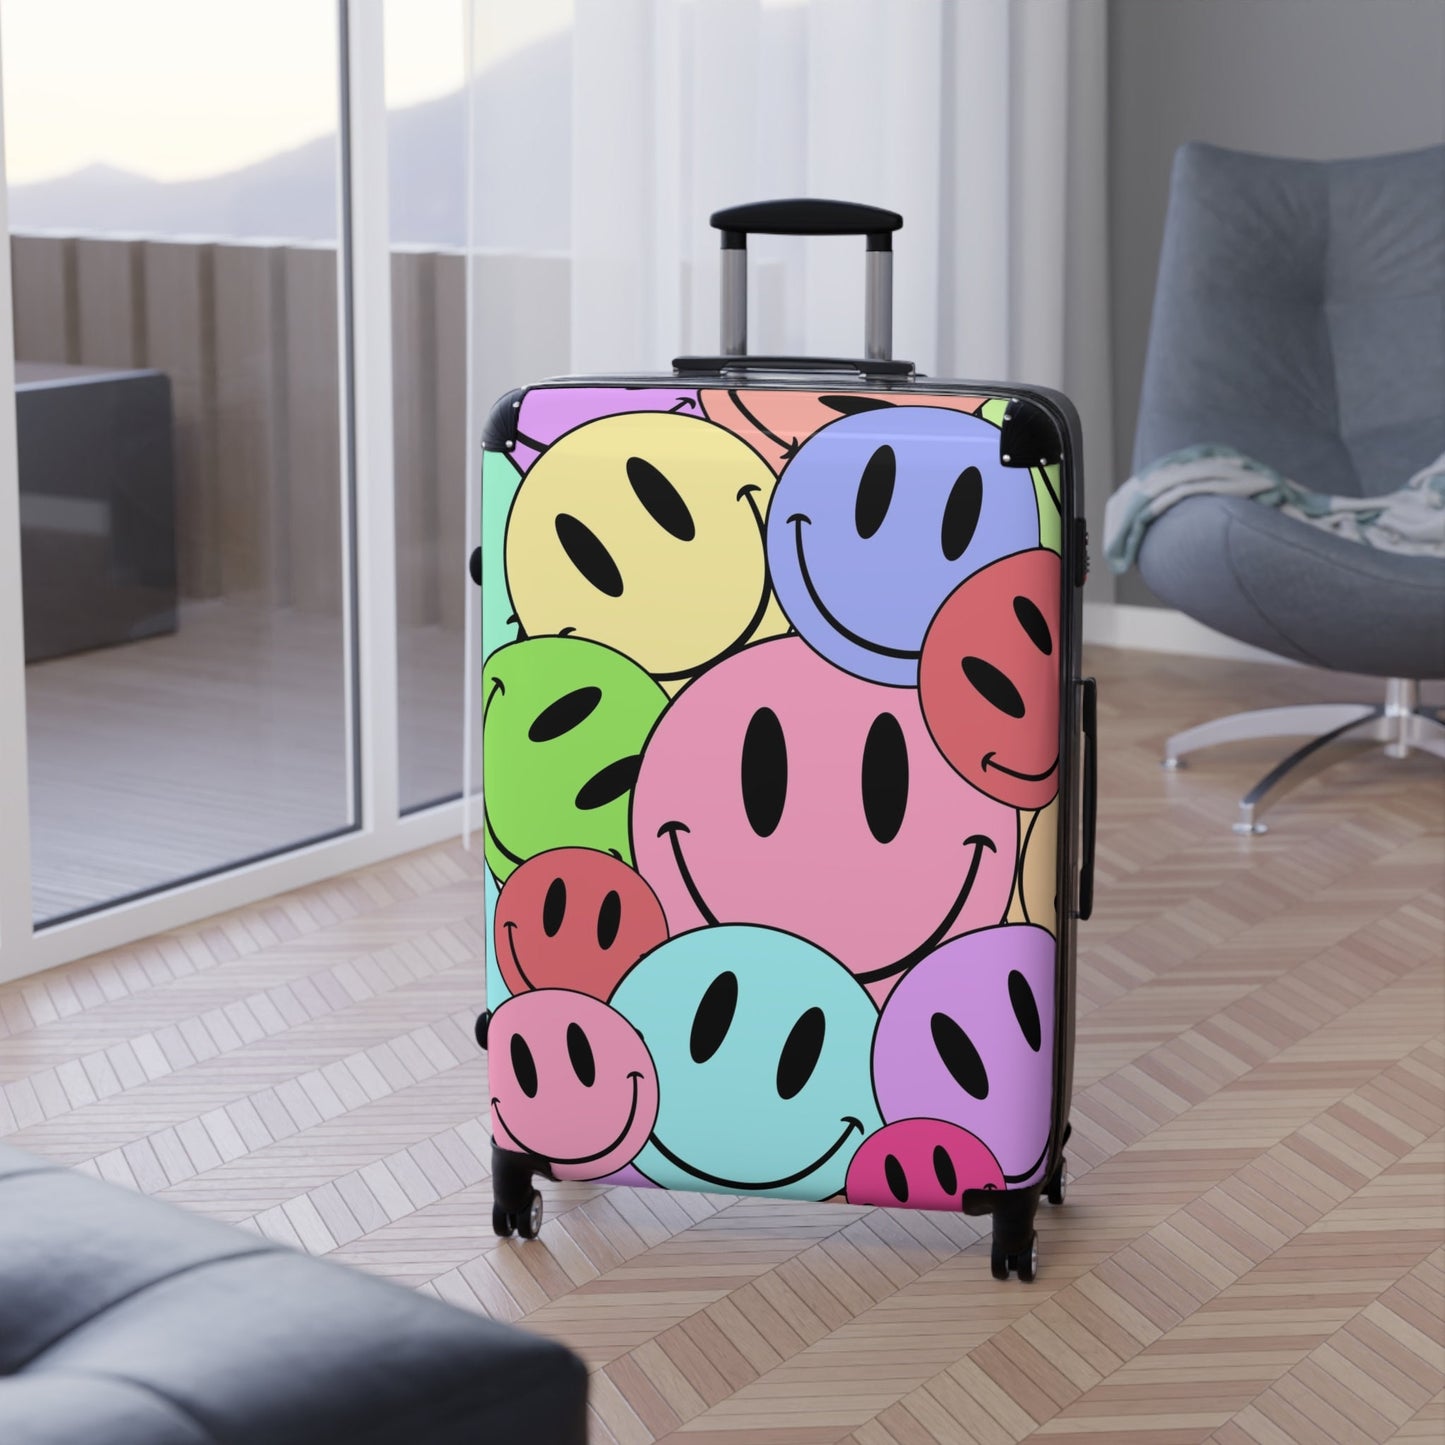 Women's Suitcase, Women Suitcase, Suitcase for Women, Smiley Face Suitcase, Happy Face Suitcase, Smiley Suitcase, Suitcase, Luggage